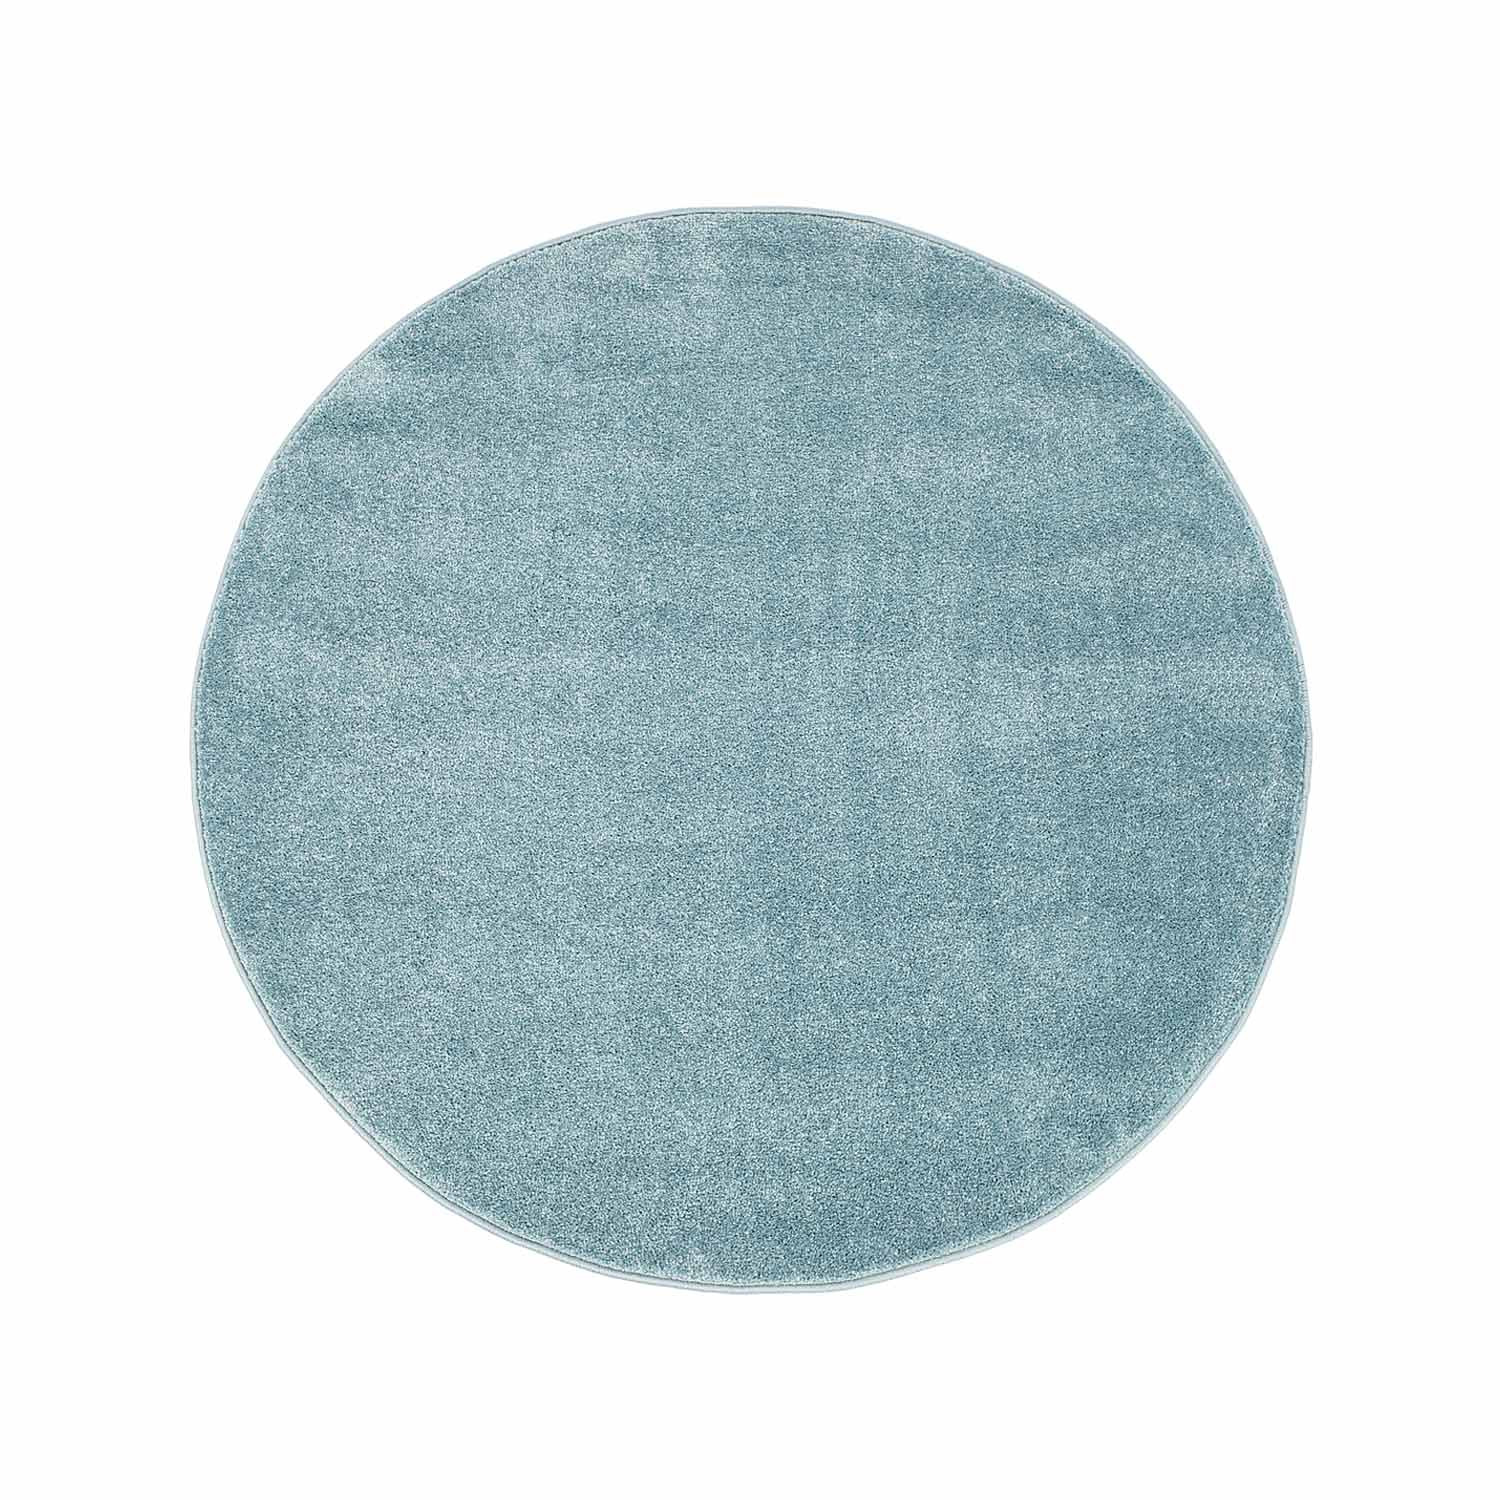 Runda mattor - Moda (blå)